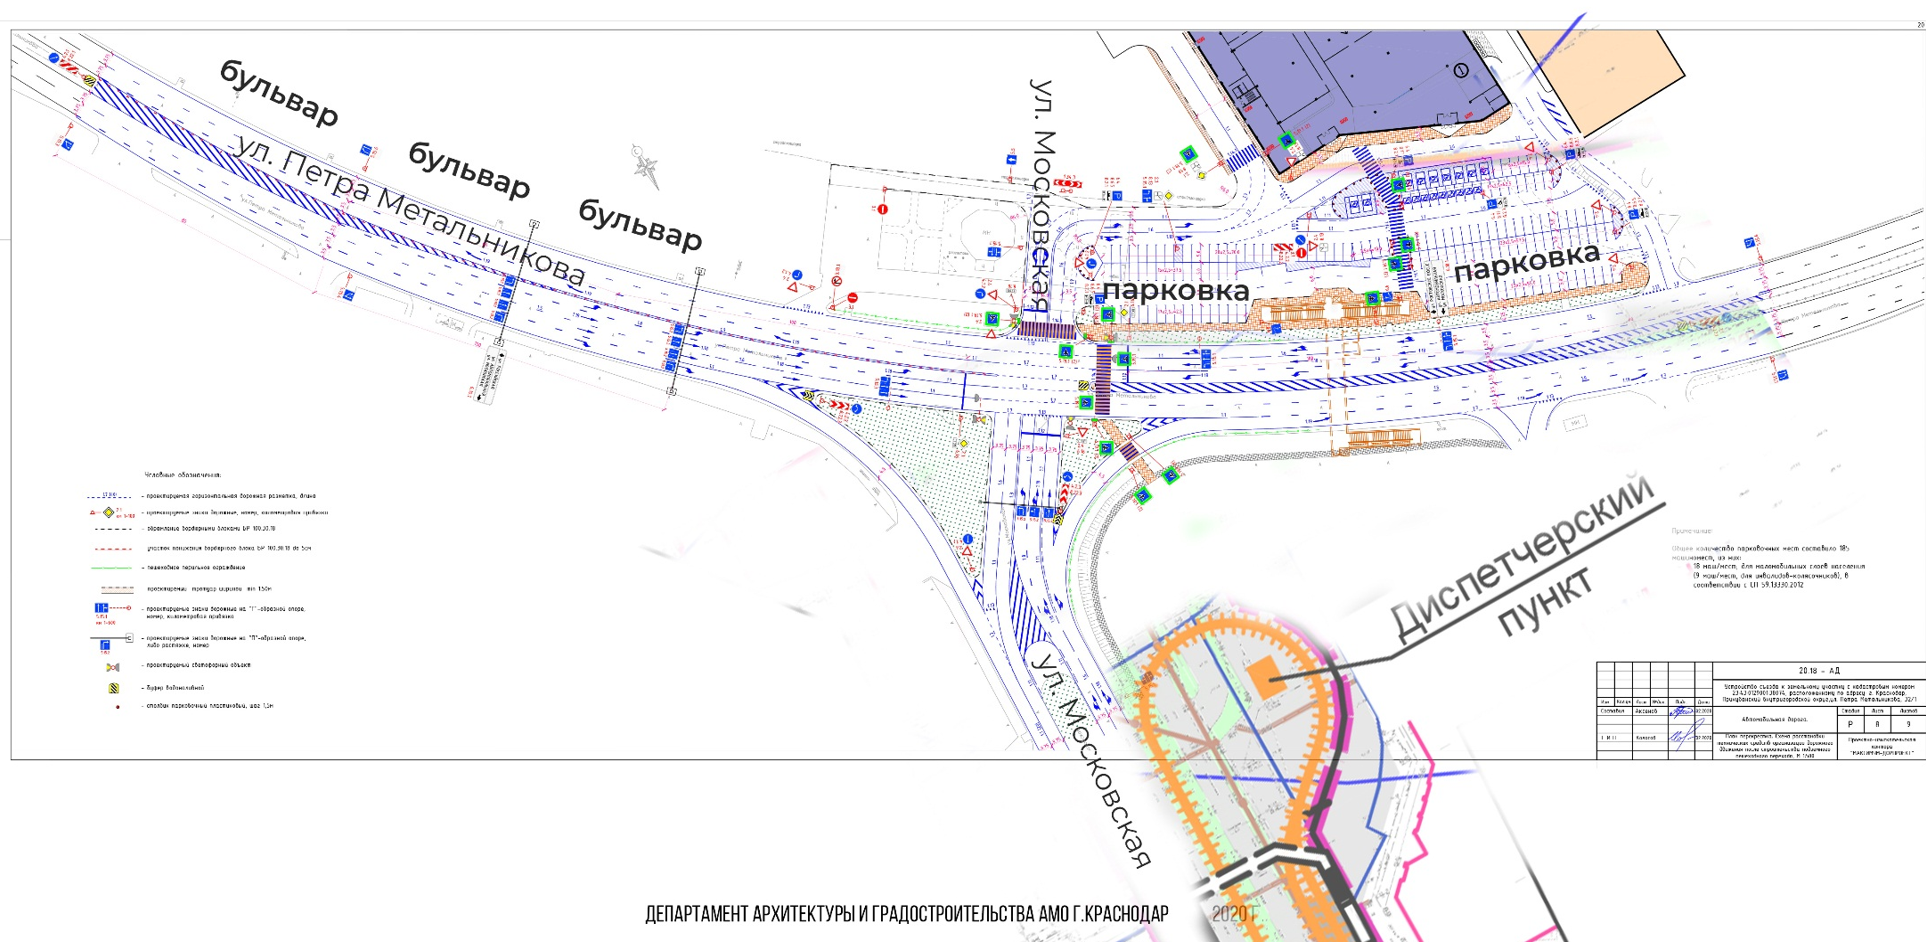 Для новой трамвайной линии в Краснодаре построят перехватывающую парковку